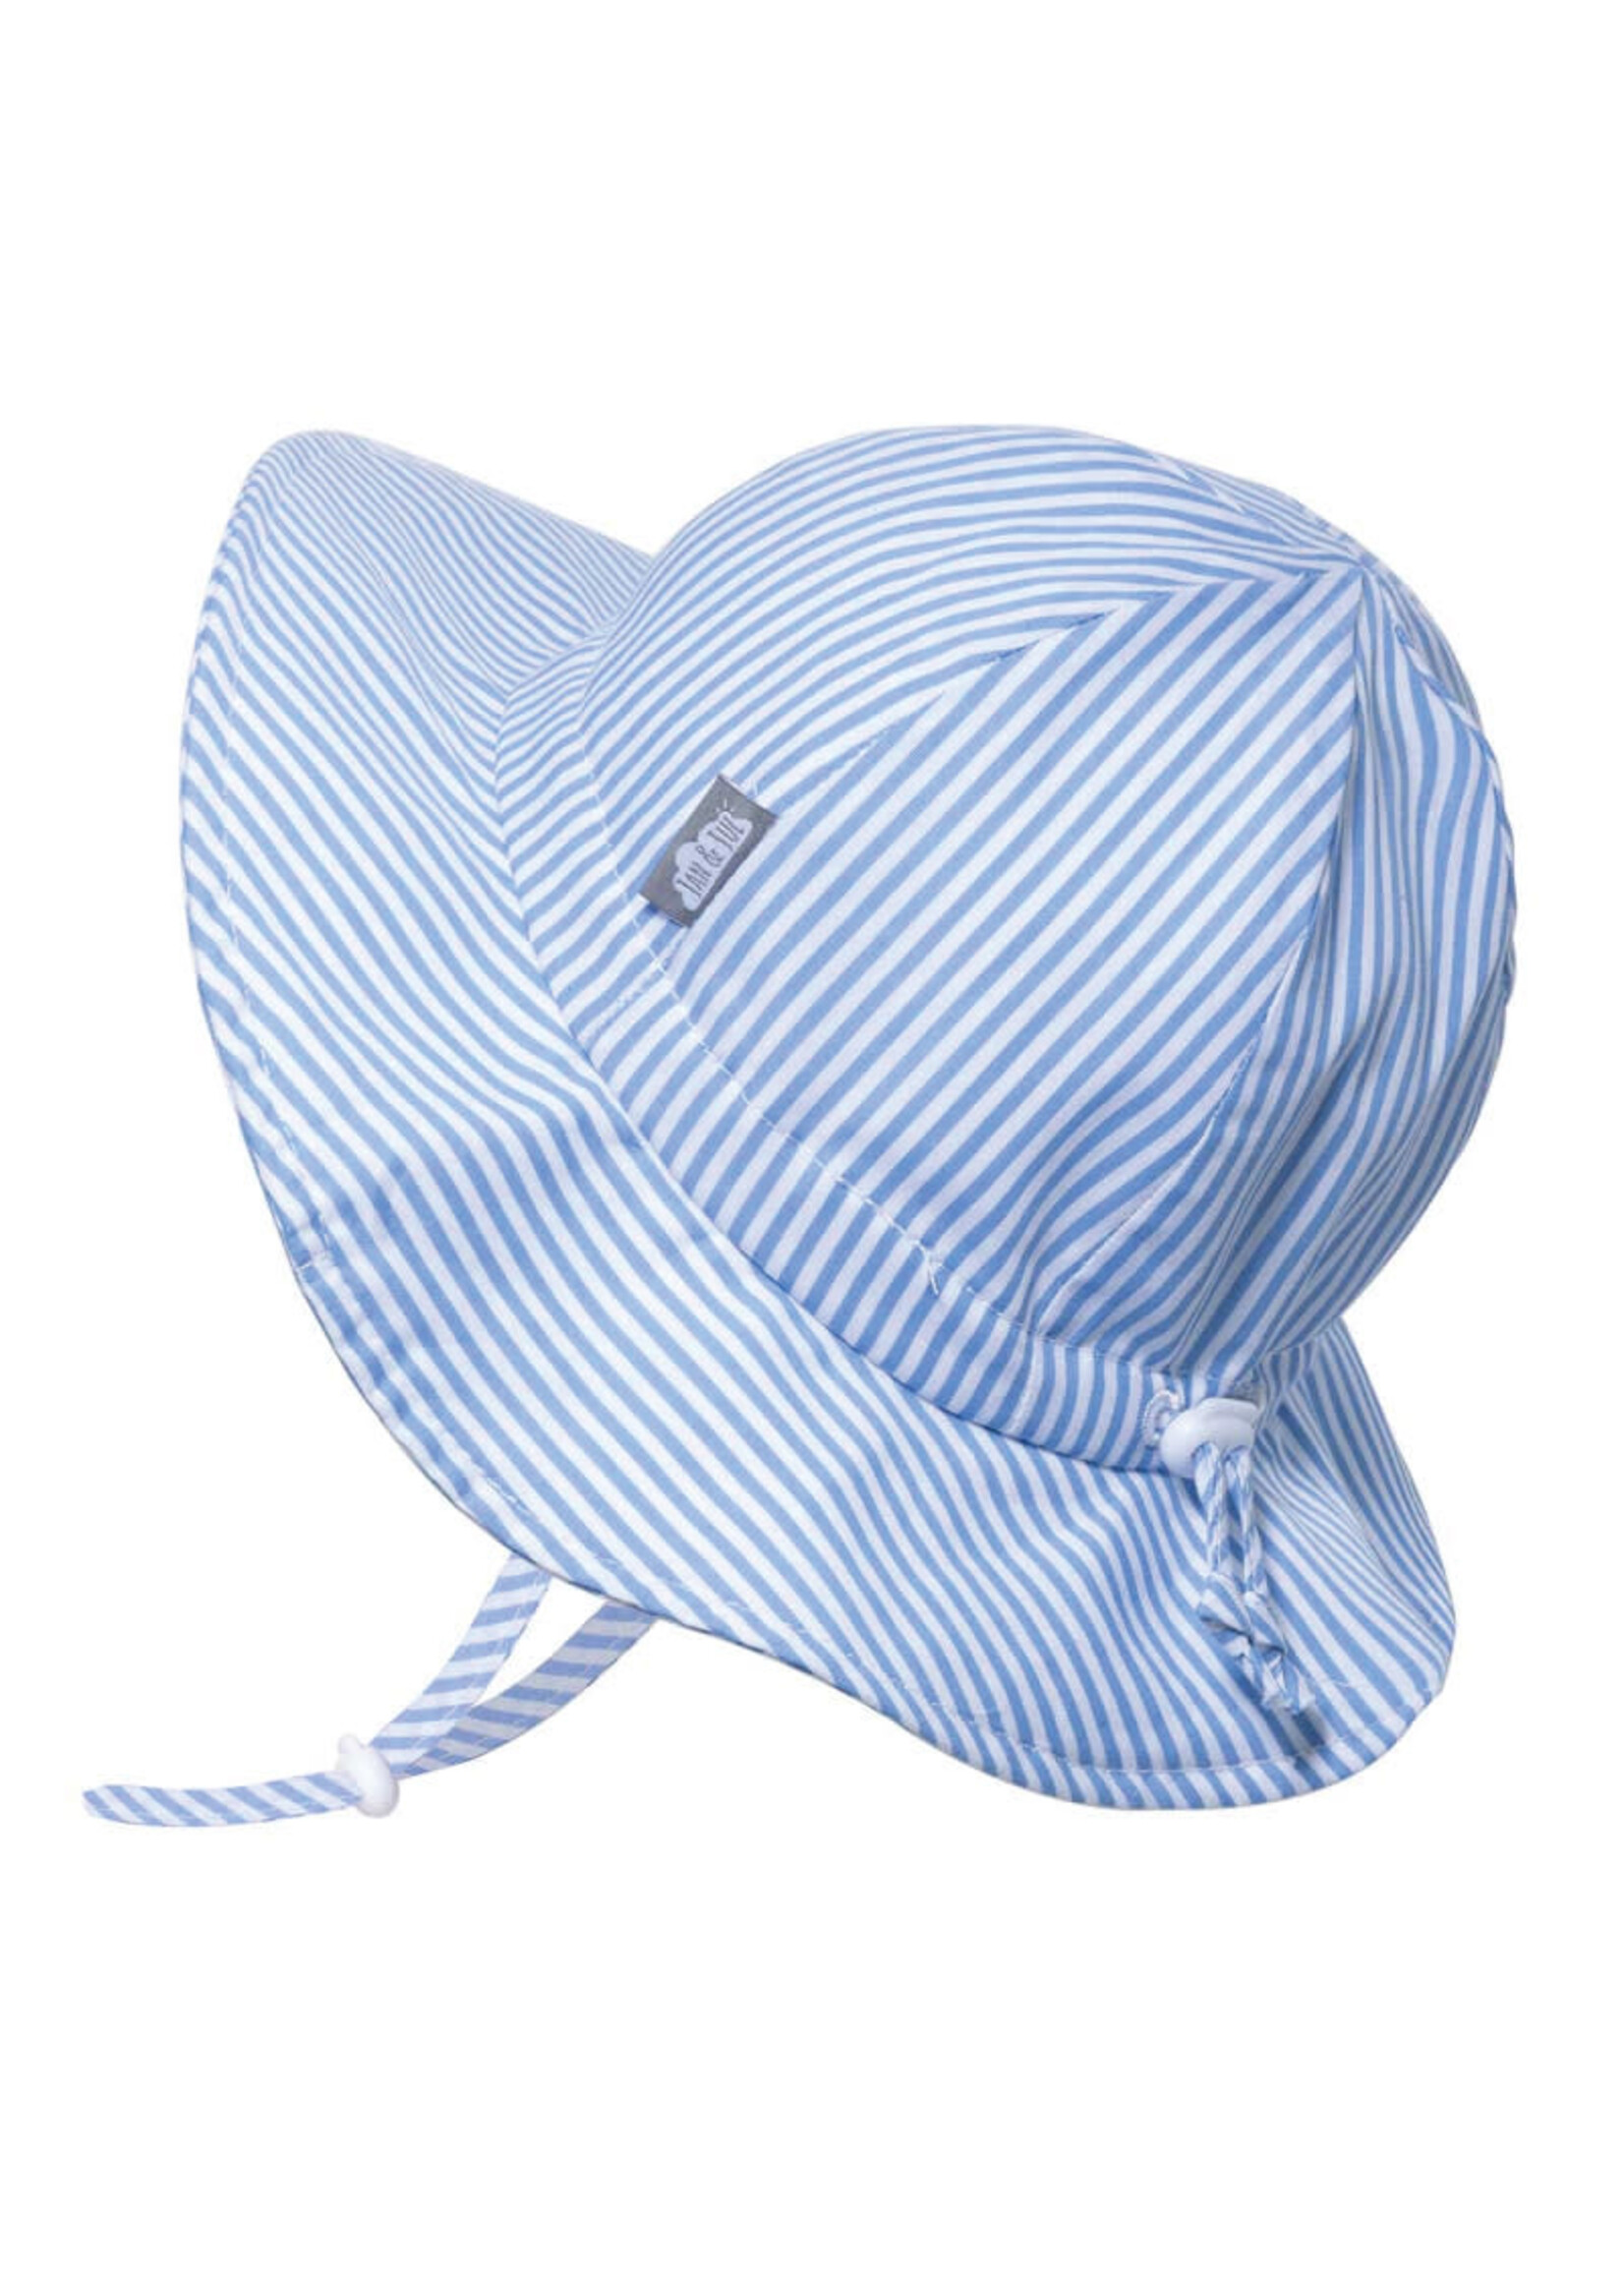 Jan & Jul Jan & Jul Cotton Floppy Hat- Blue Stripes